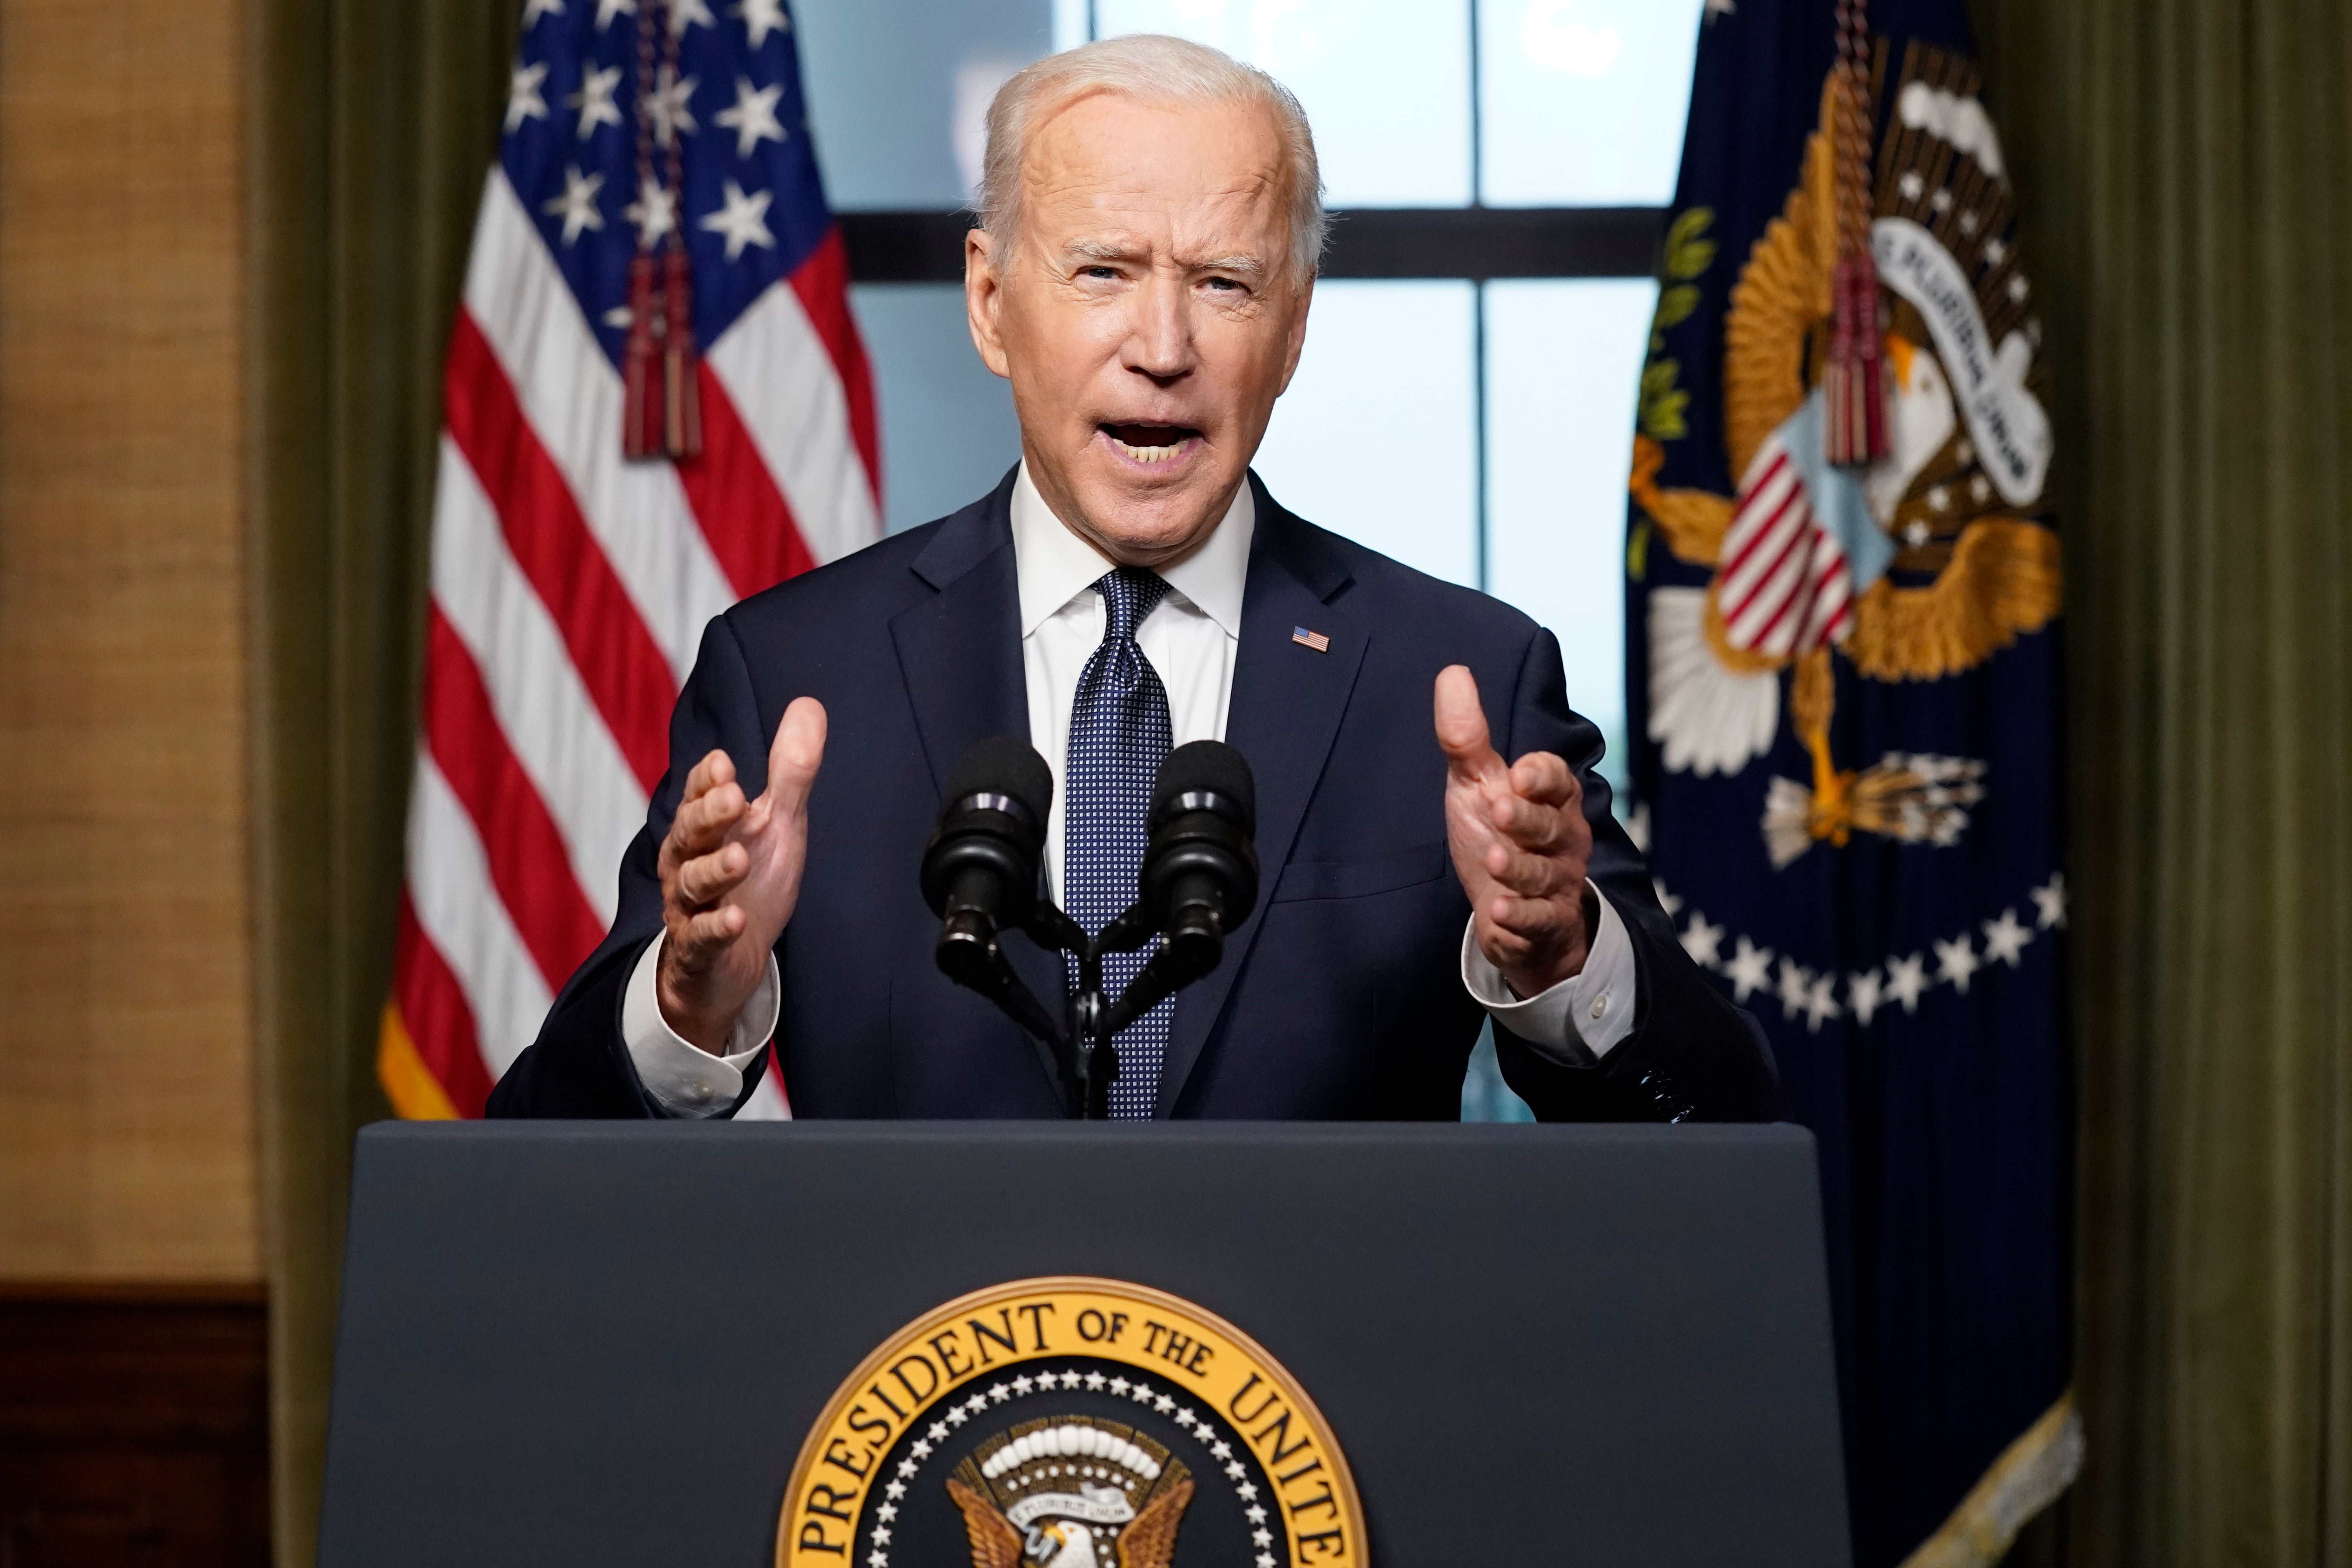 Joe Biden is hoping for a second term